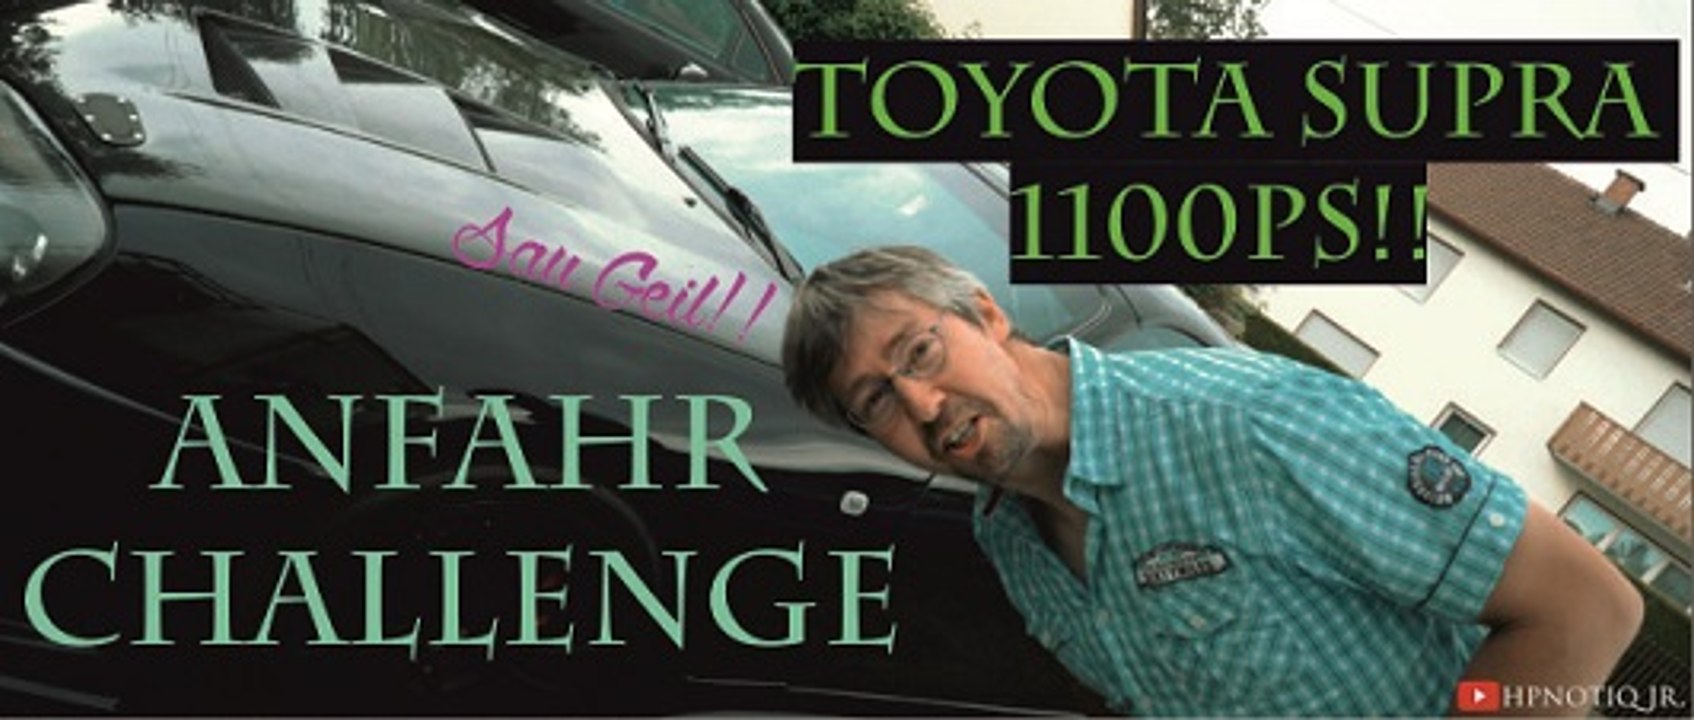 1100 PS Toyota Supra anfahr Challenge! 2scheiben Kupplung Clutch hard to launch